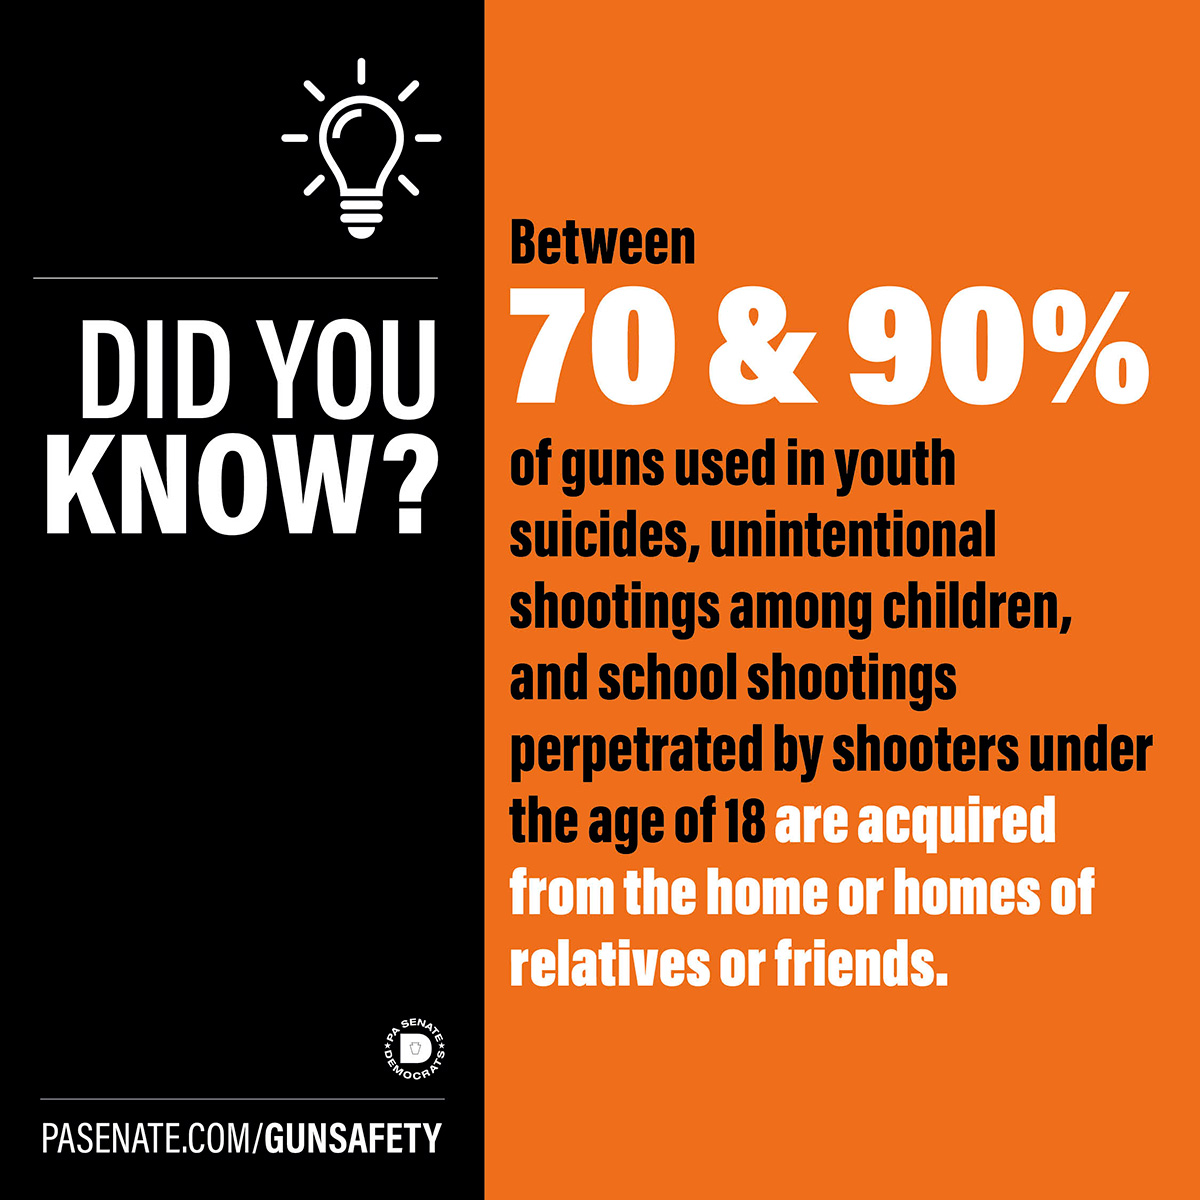 알고 계셨나요? 청소년 자살, 아동의 우발적 총격 사건, 18세 미만 범인이 저지른 학교 총격 사건에 사용된 총기의 70~90%는 집이나 친척 또는 친구의 집에서 구입한 총기입니다.